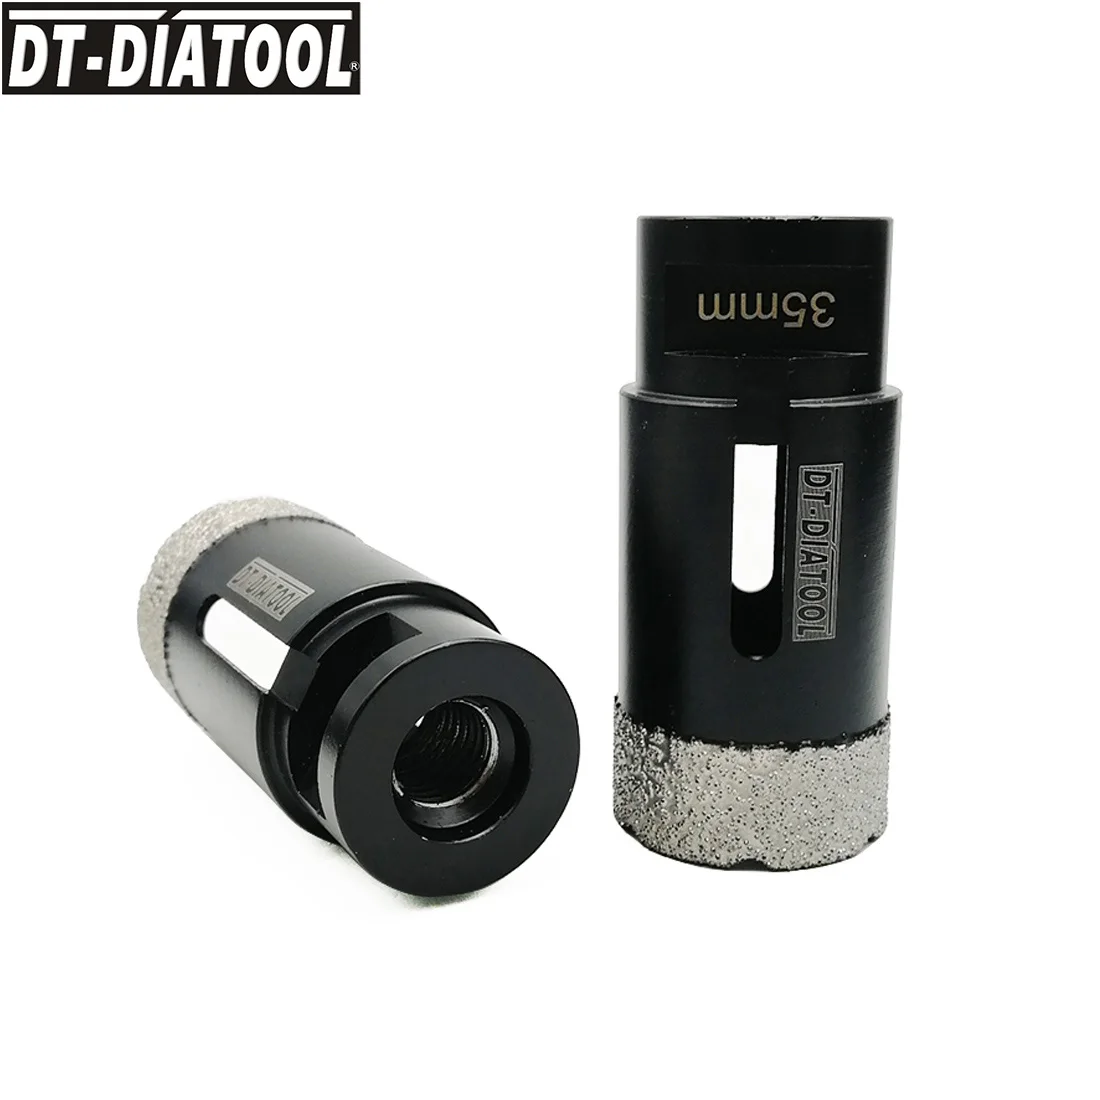 DT-DIATOOL 2pcs M14 Dia 35mm Vacuum Brazed Diamond Dry Drill Core Bits Porcelain Tile Hole Saw Granite Marble Stone Drilling Bit